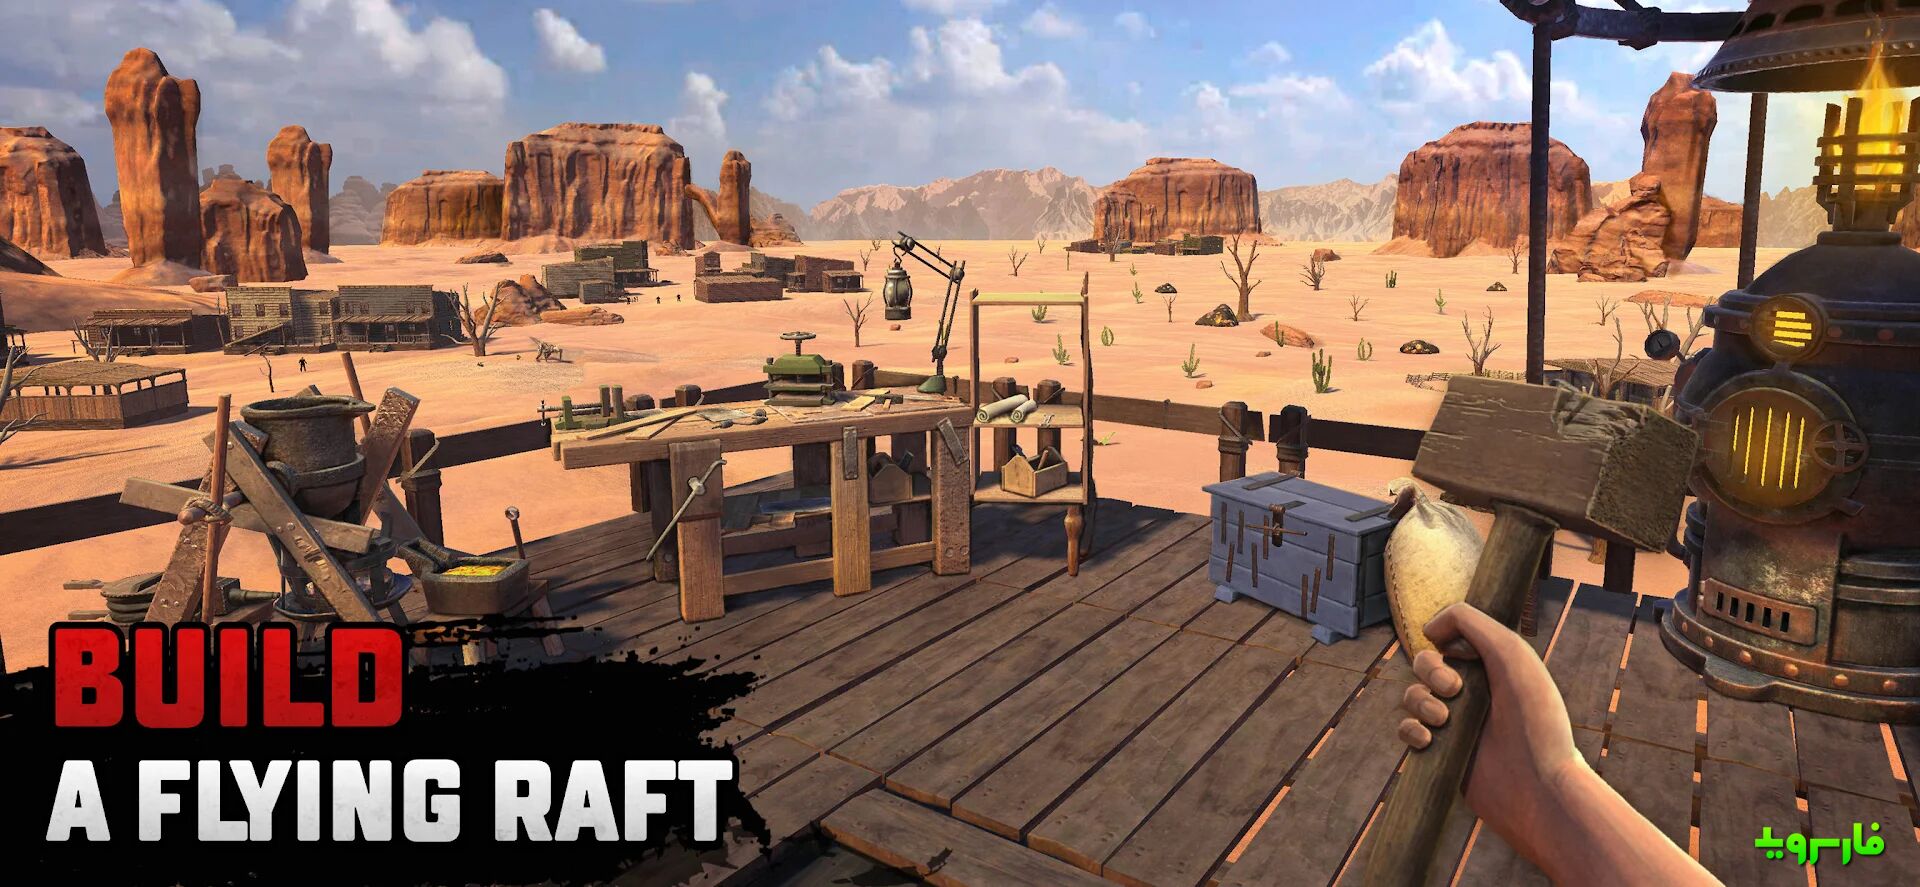 Raft-Survival-Desert-Nomad-1.jpg